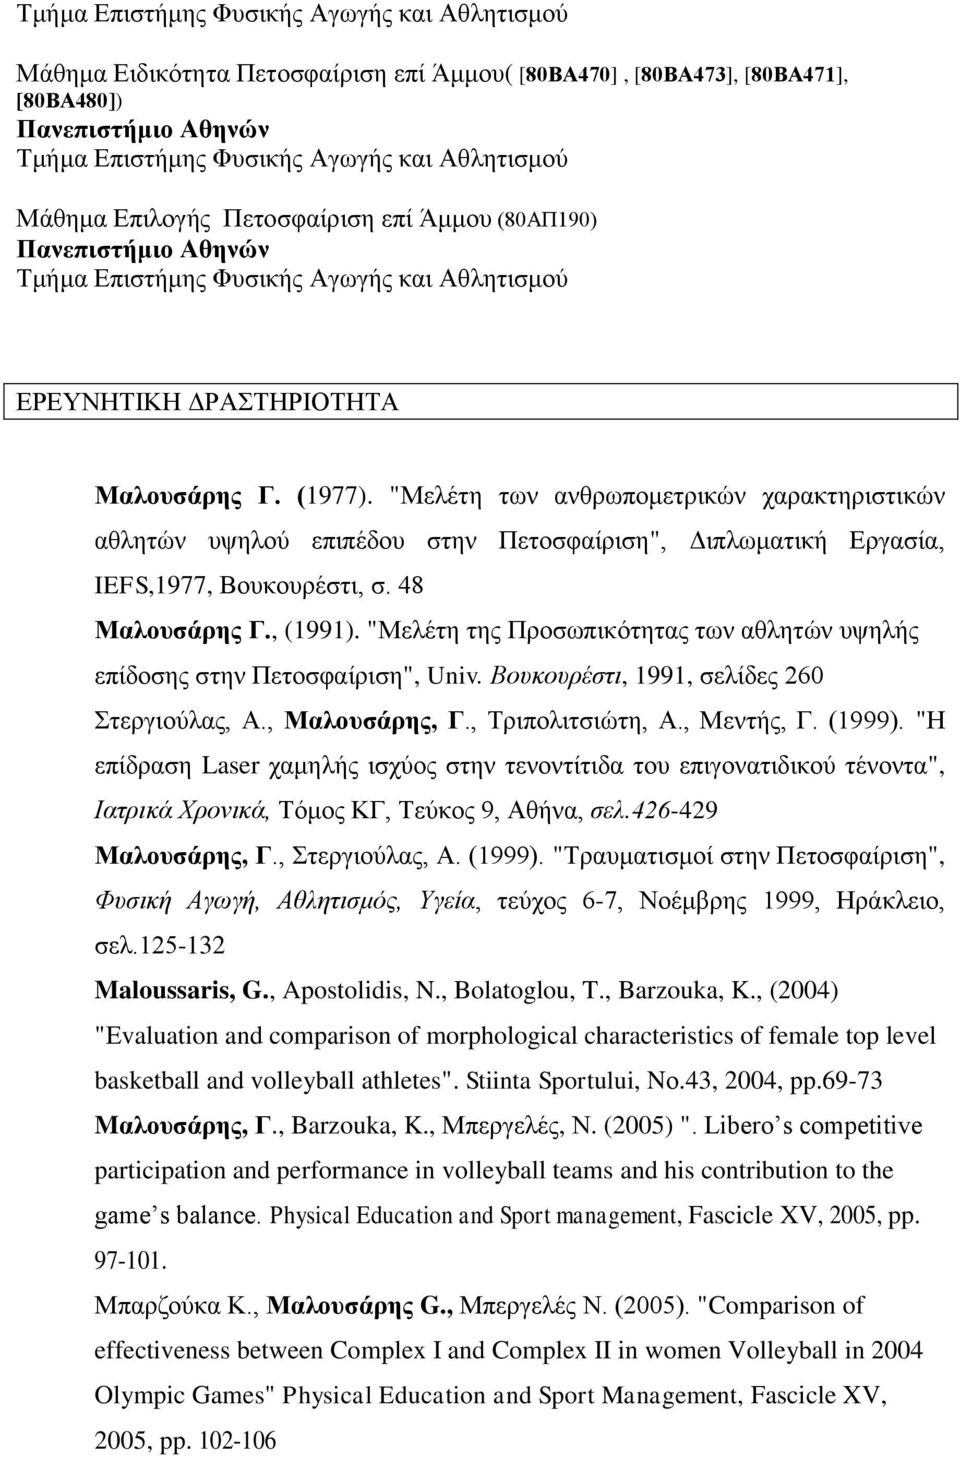 "Μελέτη της Προσωπικότητας των αθλητών υψηλής επίδοσης στην Πετοσφαίριση", Univ. Βουκουρέστι, 1991, σελίδες 260 Στεργιούλας, Α., Μαλουσάρης, Γ., Τριπολιτσιώτη, Α., Μεντής, Γ. (1999).